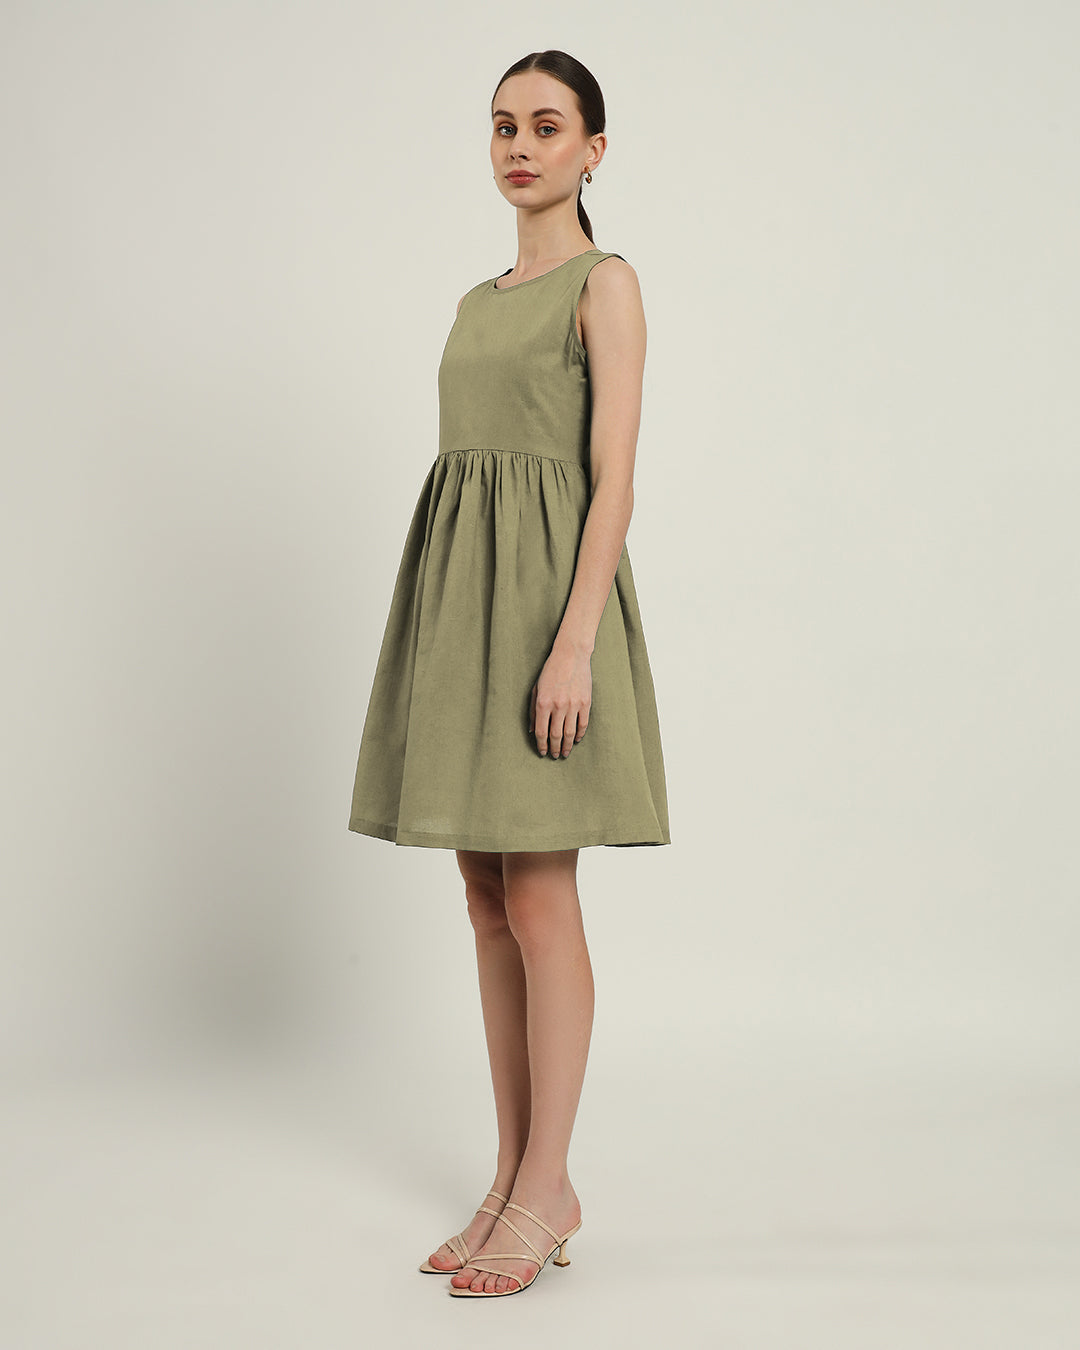 The Chania Daisy Olive Linen Dress